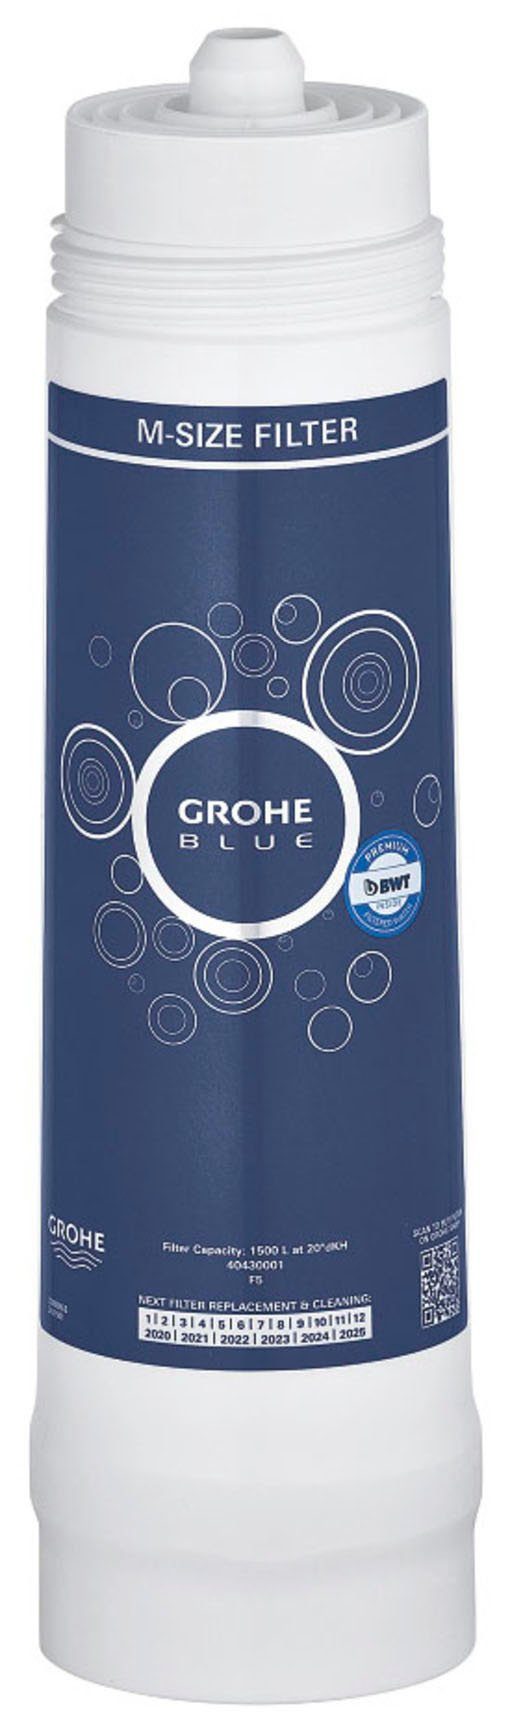 Grohe Blue, Kalk Schwermetalle reduziert Wasserfilter und